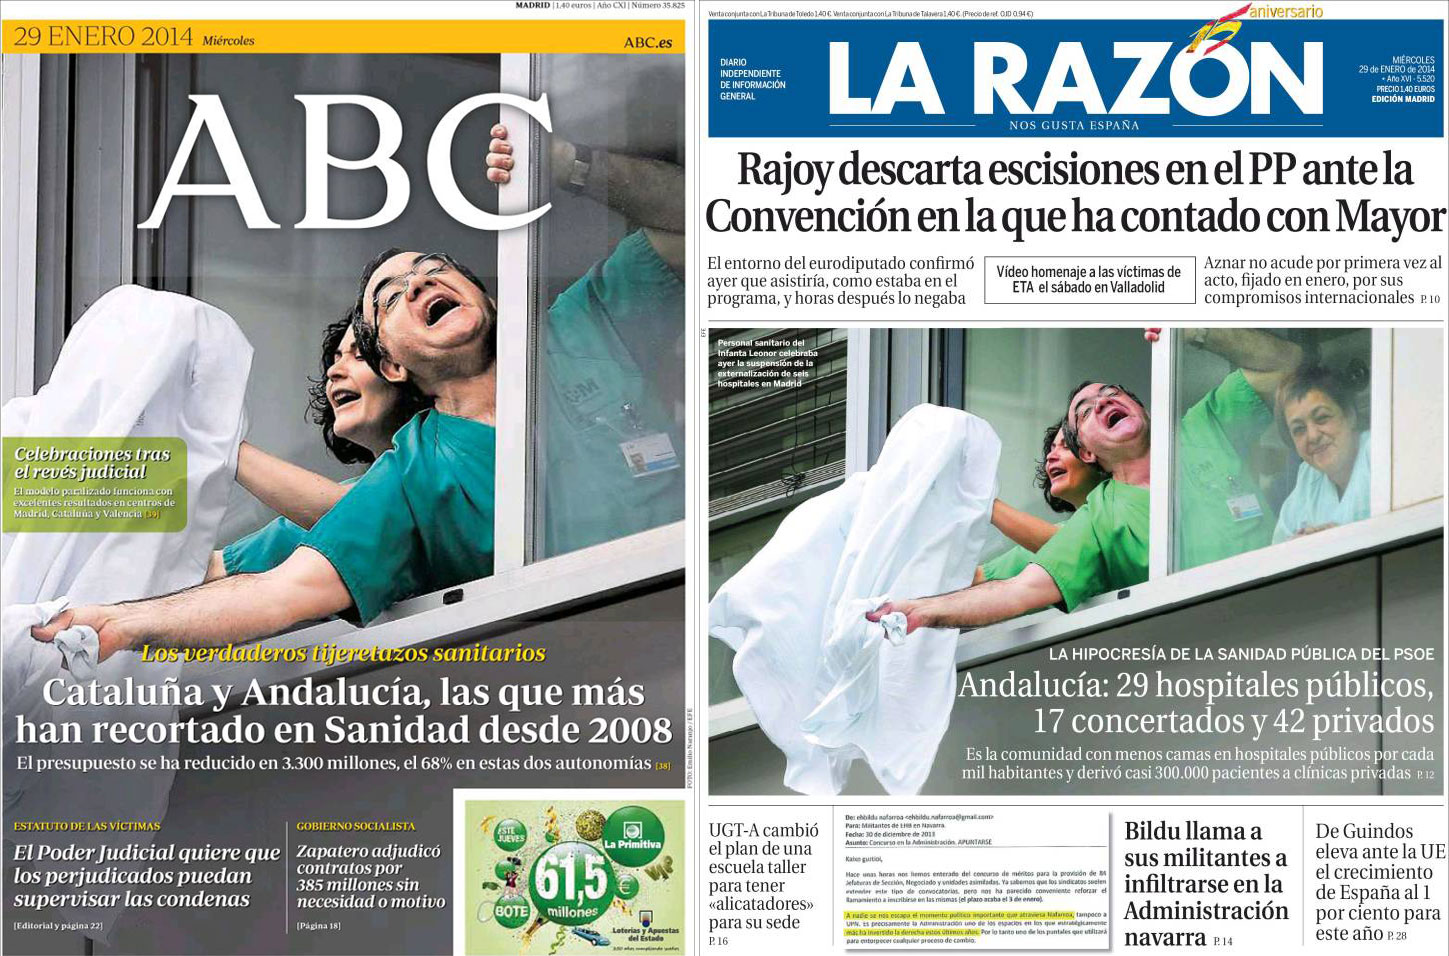 Las mentiras e intoxicaciones de ‘La Razón’ y el ‘ABC’ sobre la sanidad pública andaluza